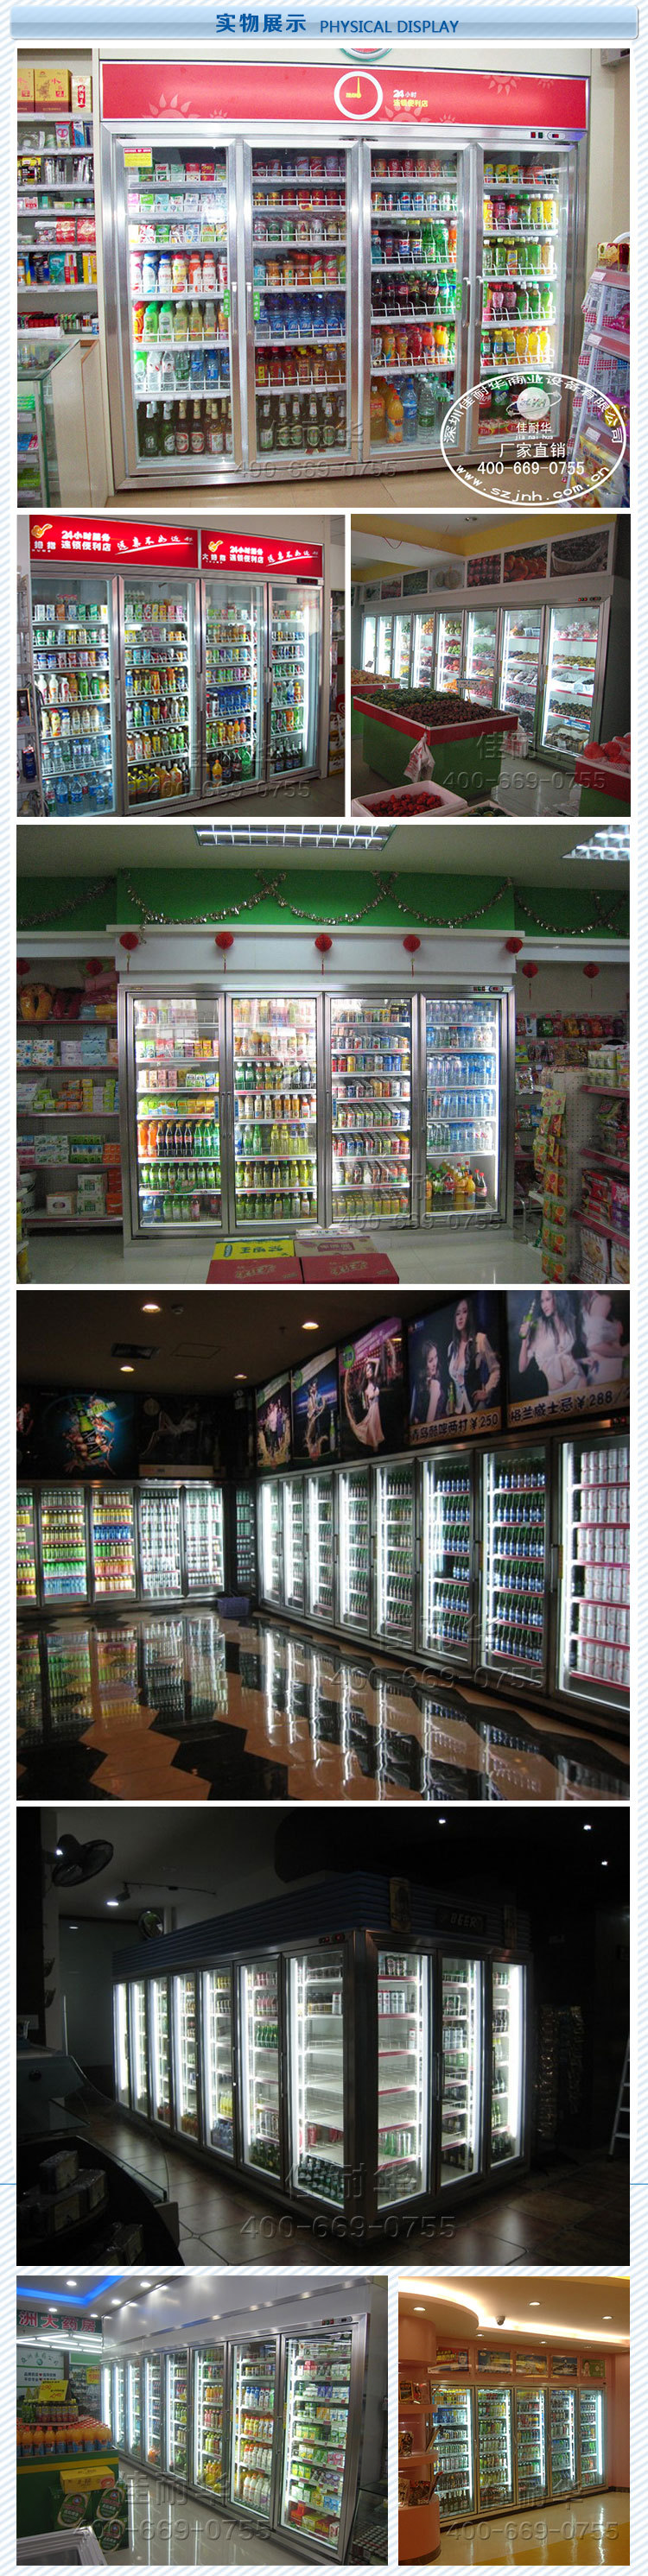 优惠促销保鲜柜冷冻设备  高档展示柜饮料冷藏柜  超市制冷设备示例图20